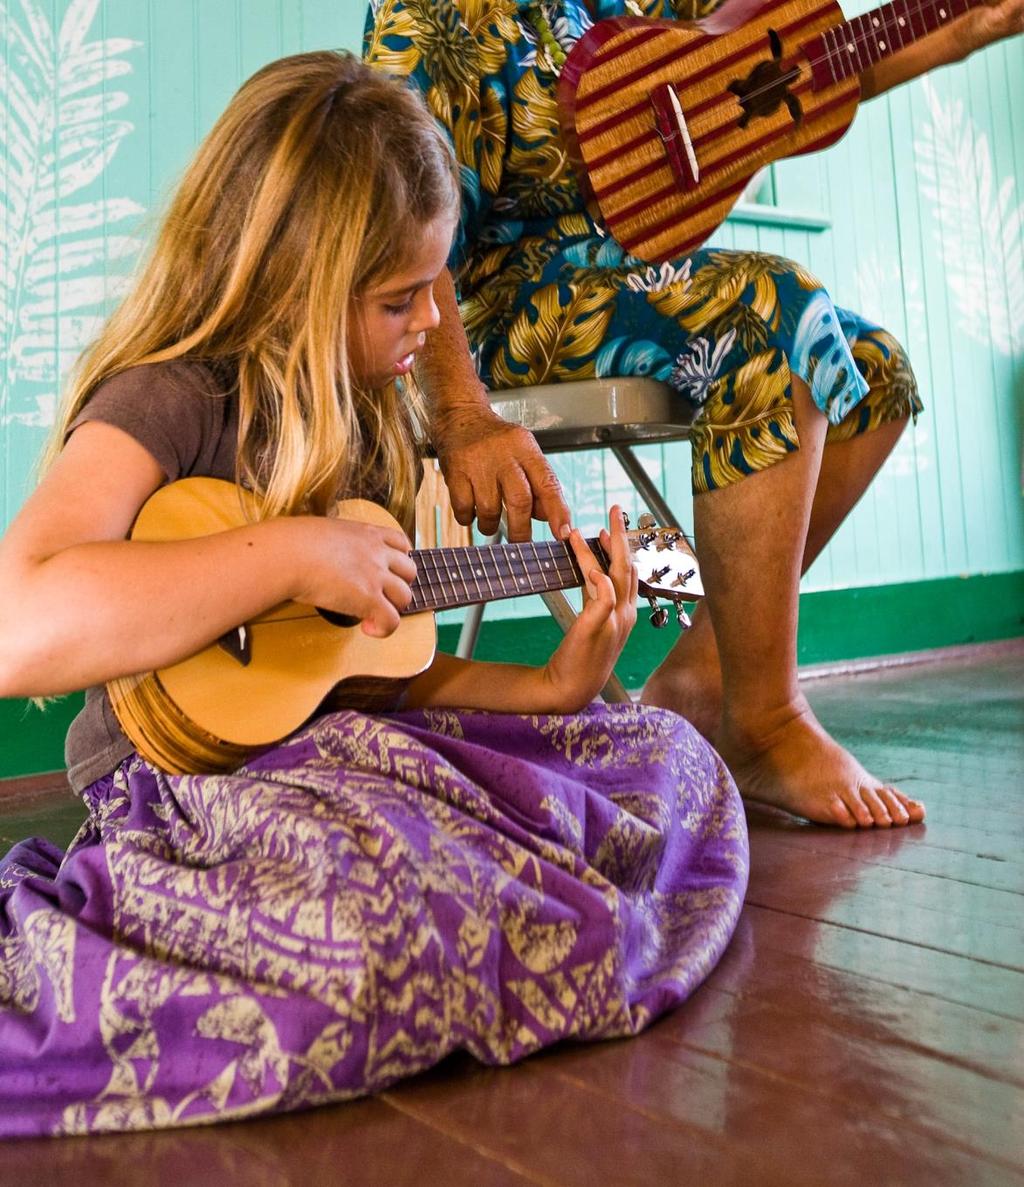 HULA Spüren Sie hautnah den Aloha Spirit mit seinen traditionellen Ukulele Klängen, Hula Tänzen im Rahmen von Wettbewerben, Festivals & Kultur Veranstaltungen das ganze Jahr.